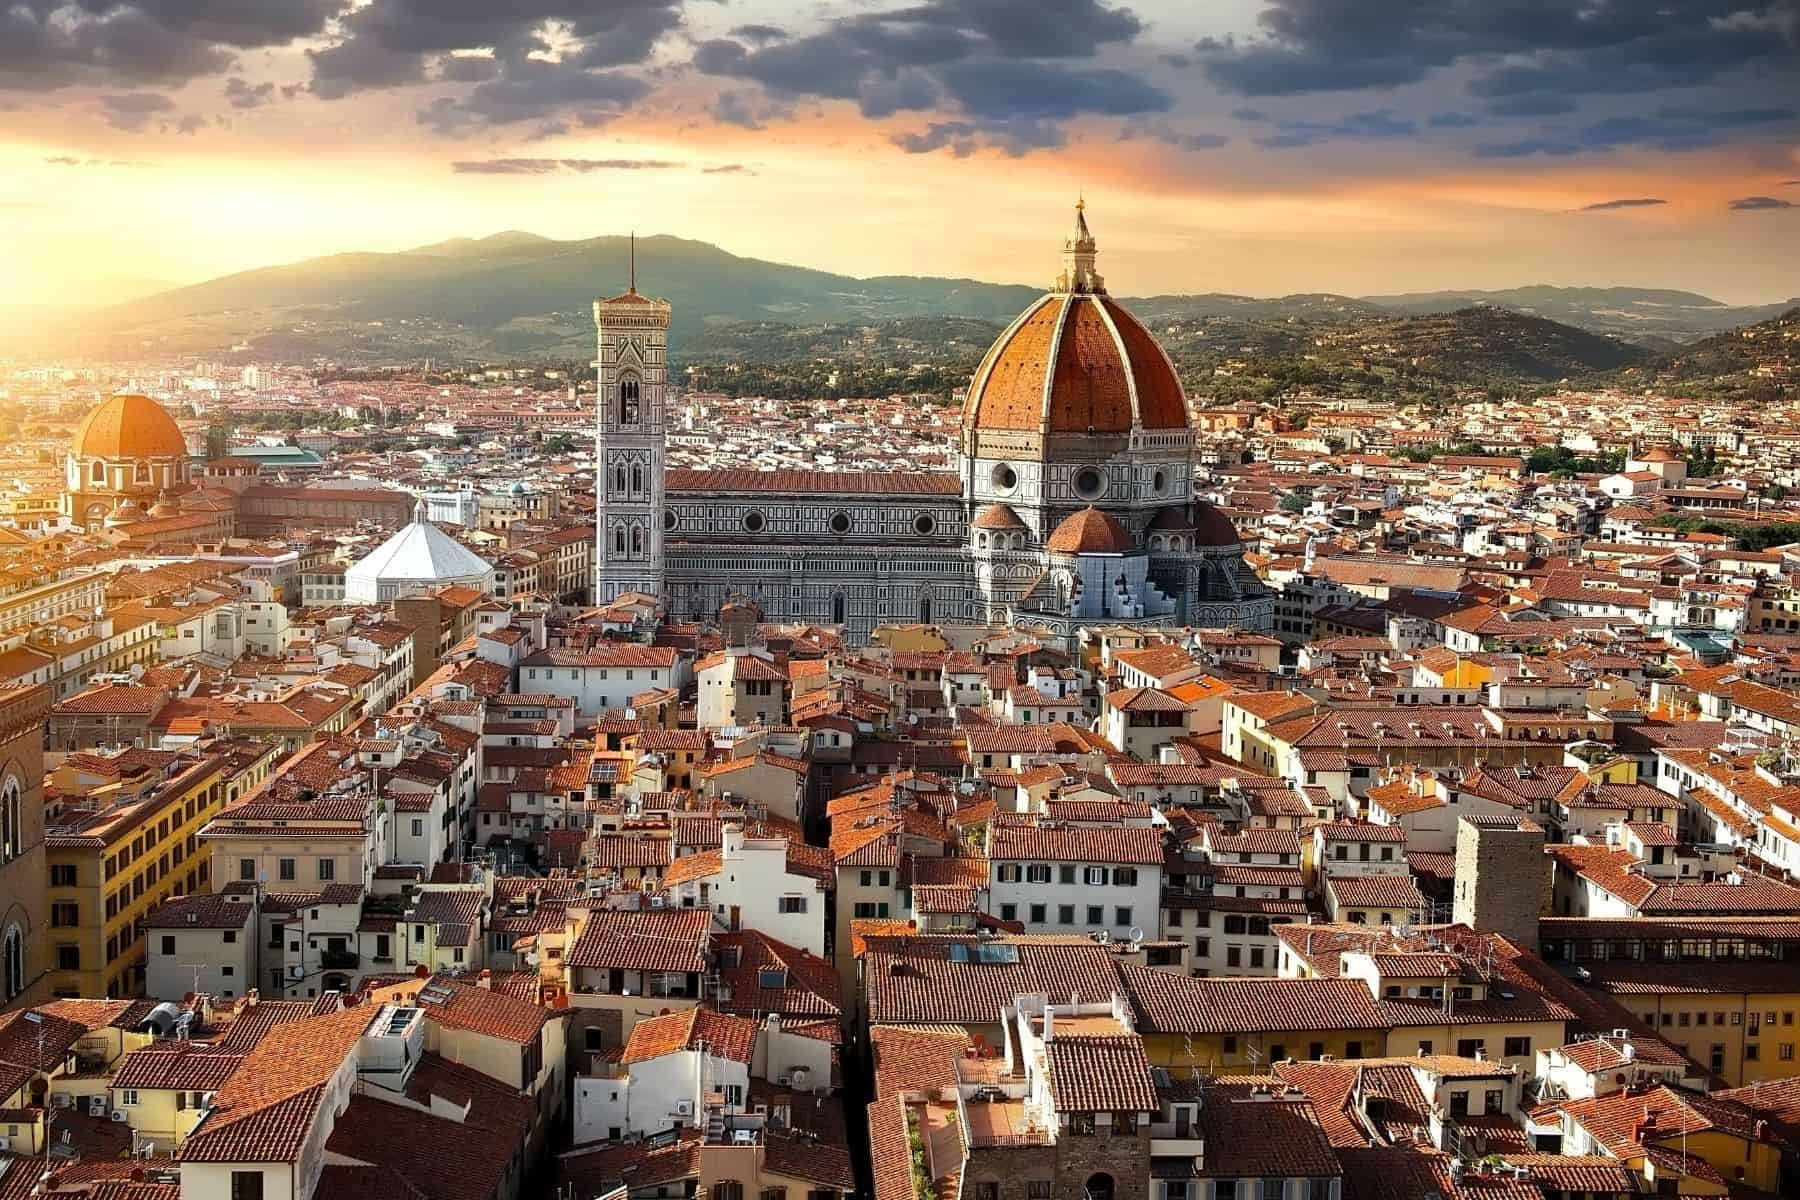 Obiective turistice in Florenta